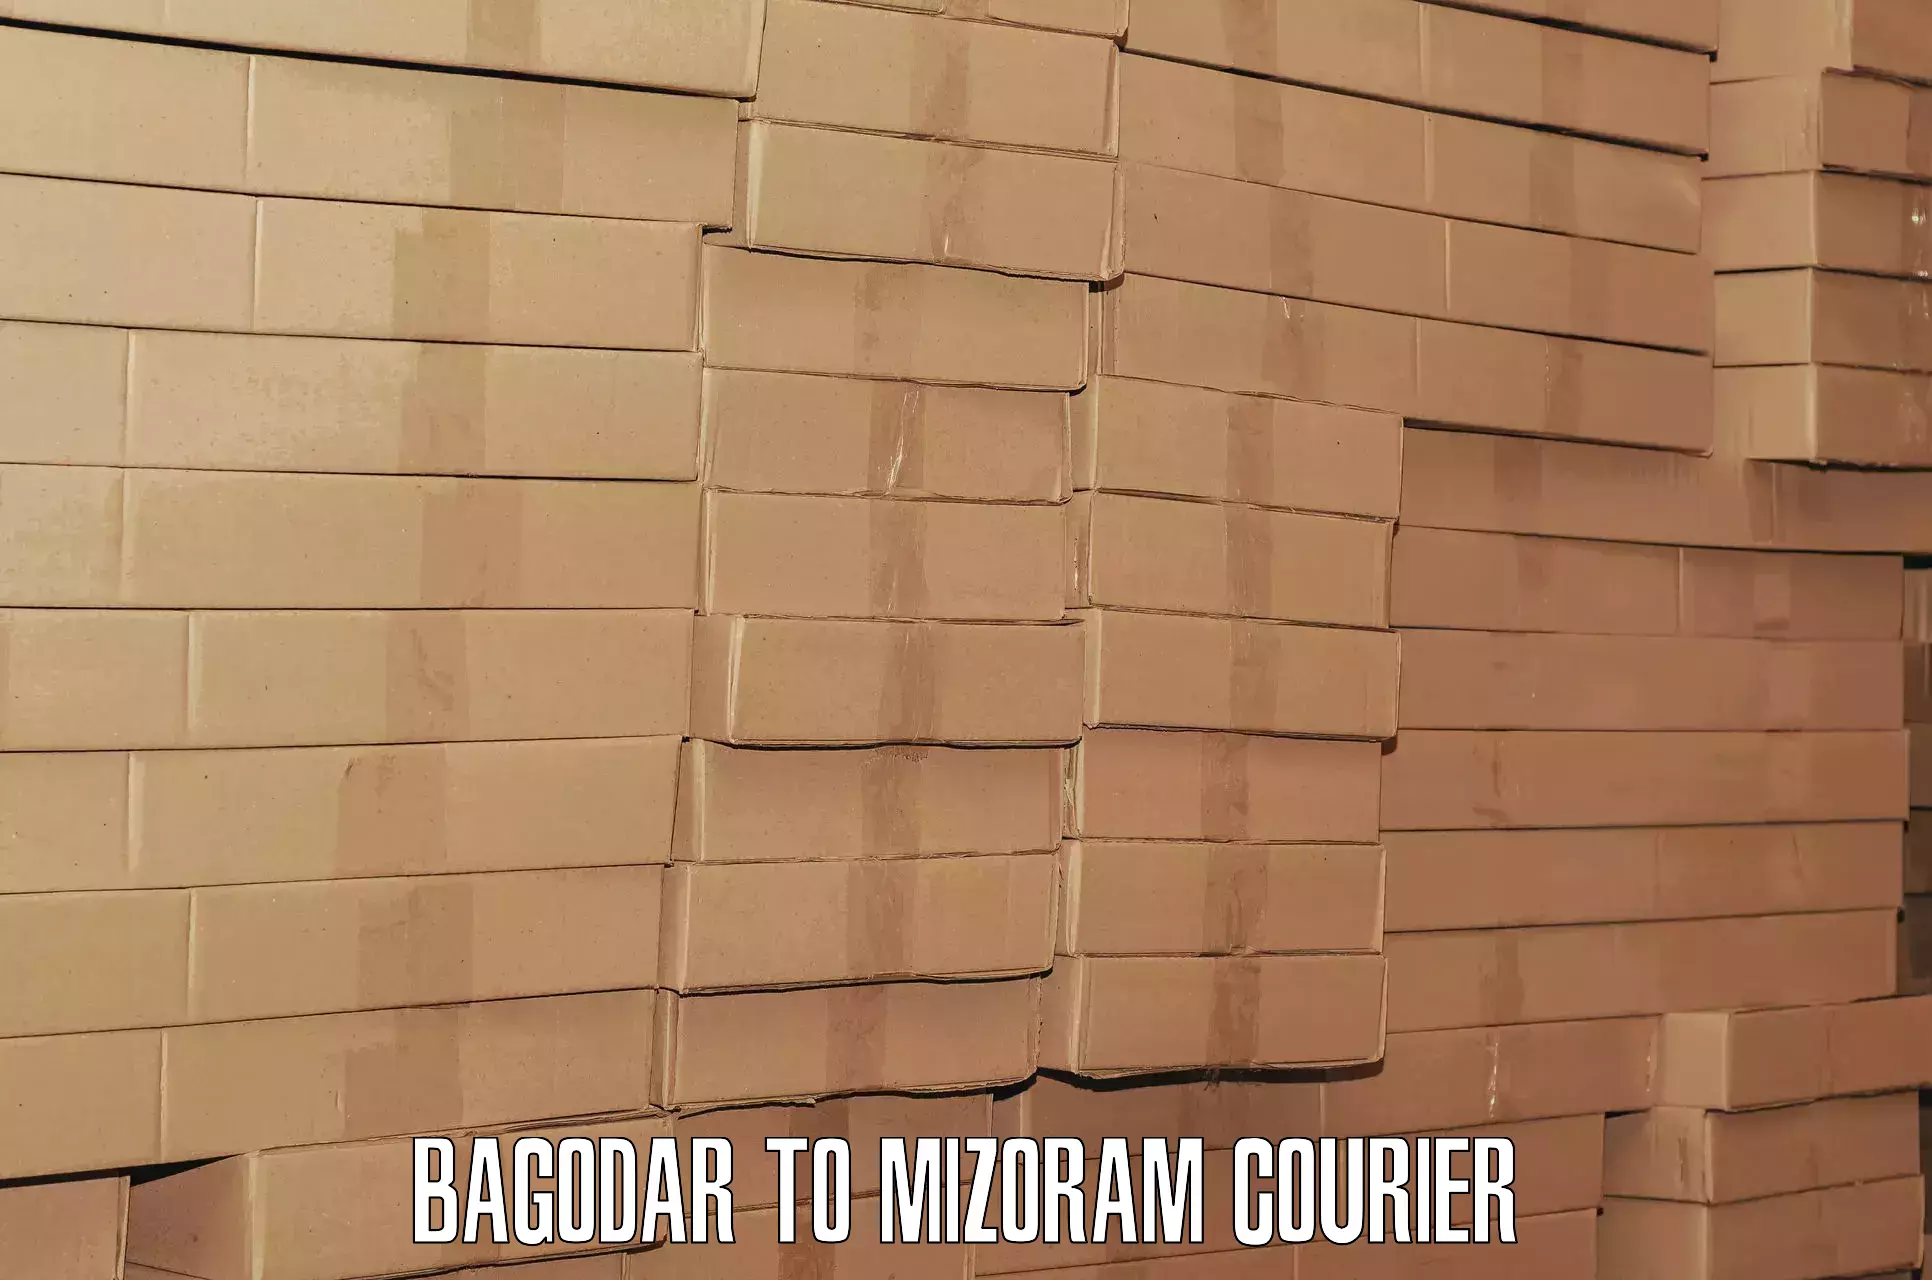 Door to hotel baggage transport Bagodar to Mizoram